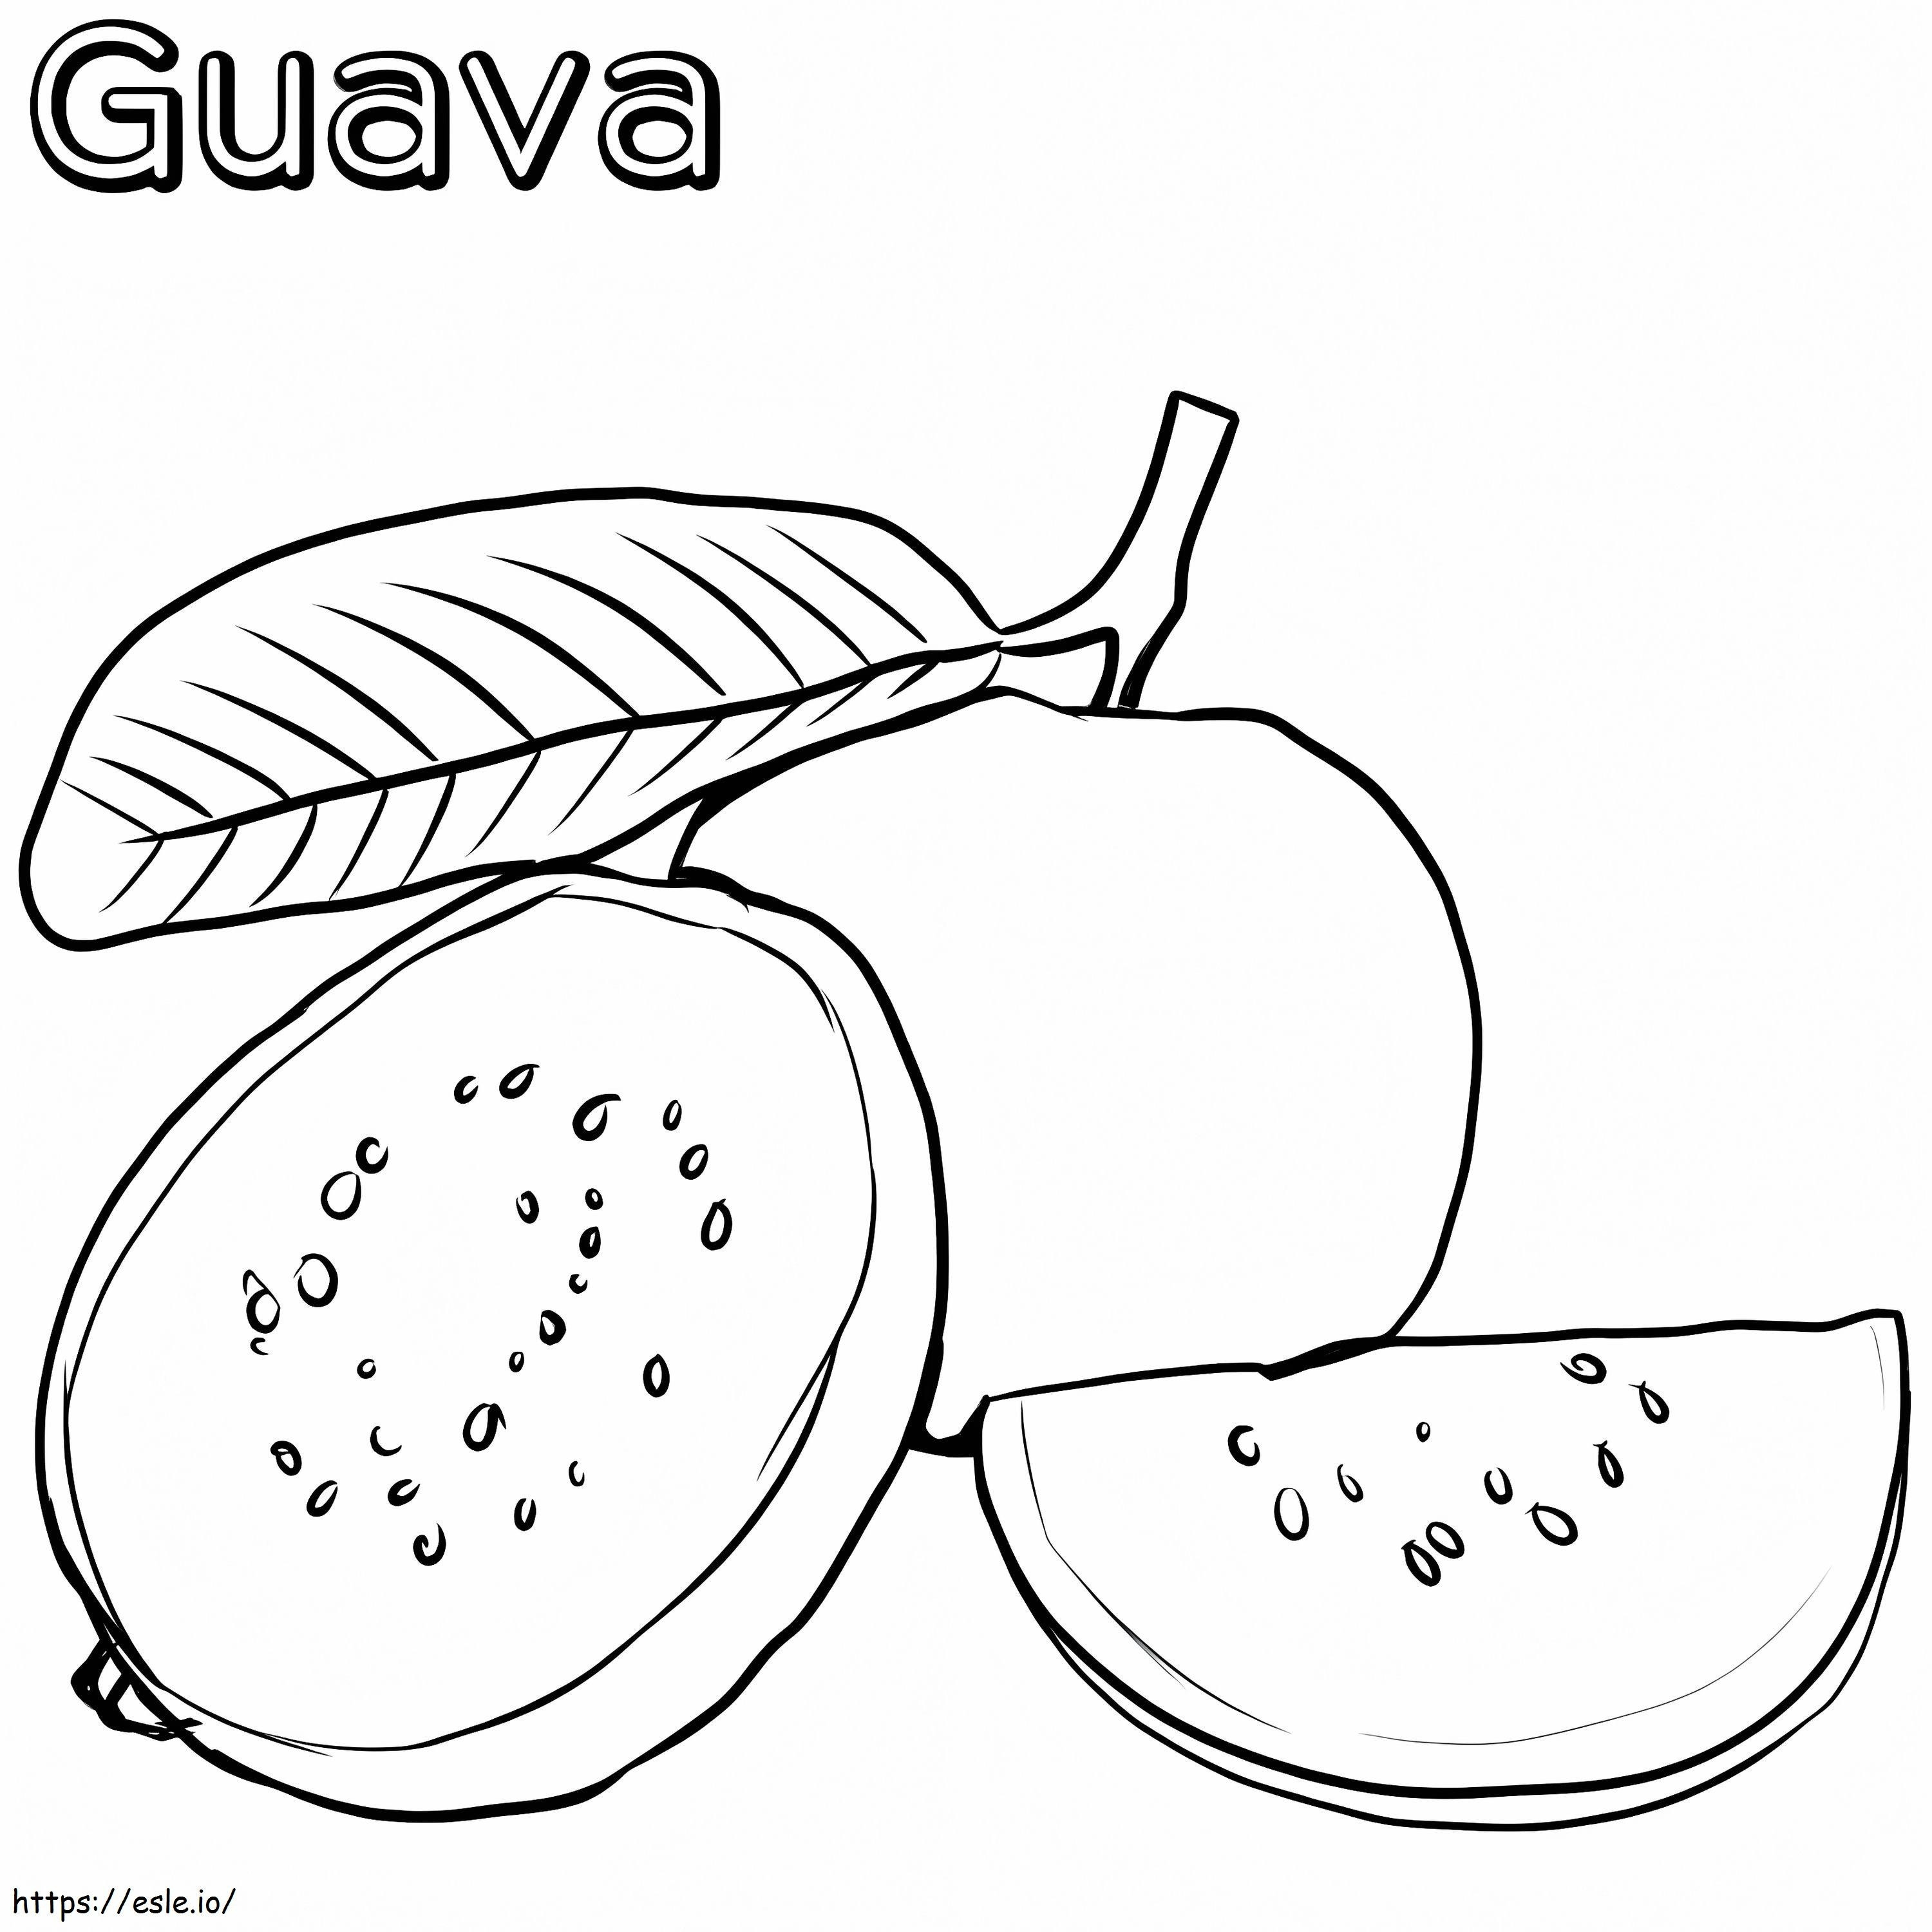 Alap guava kifestő